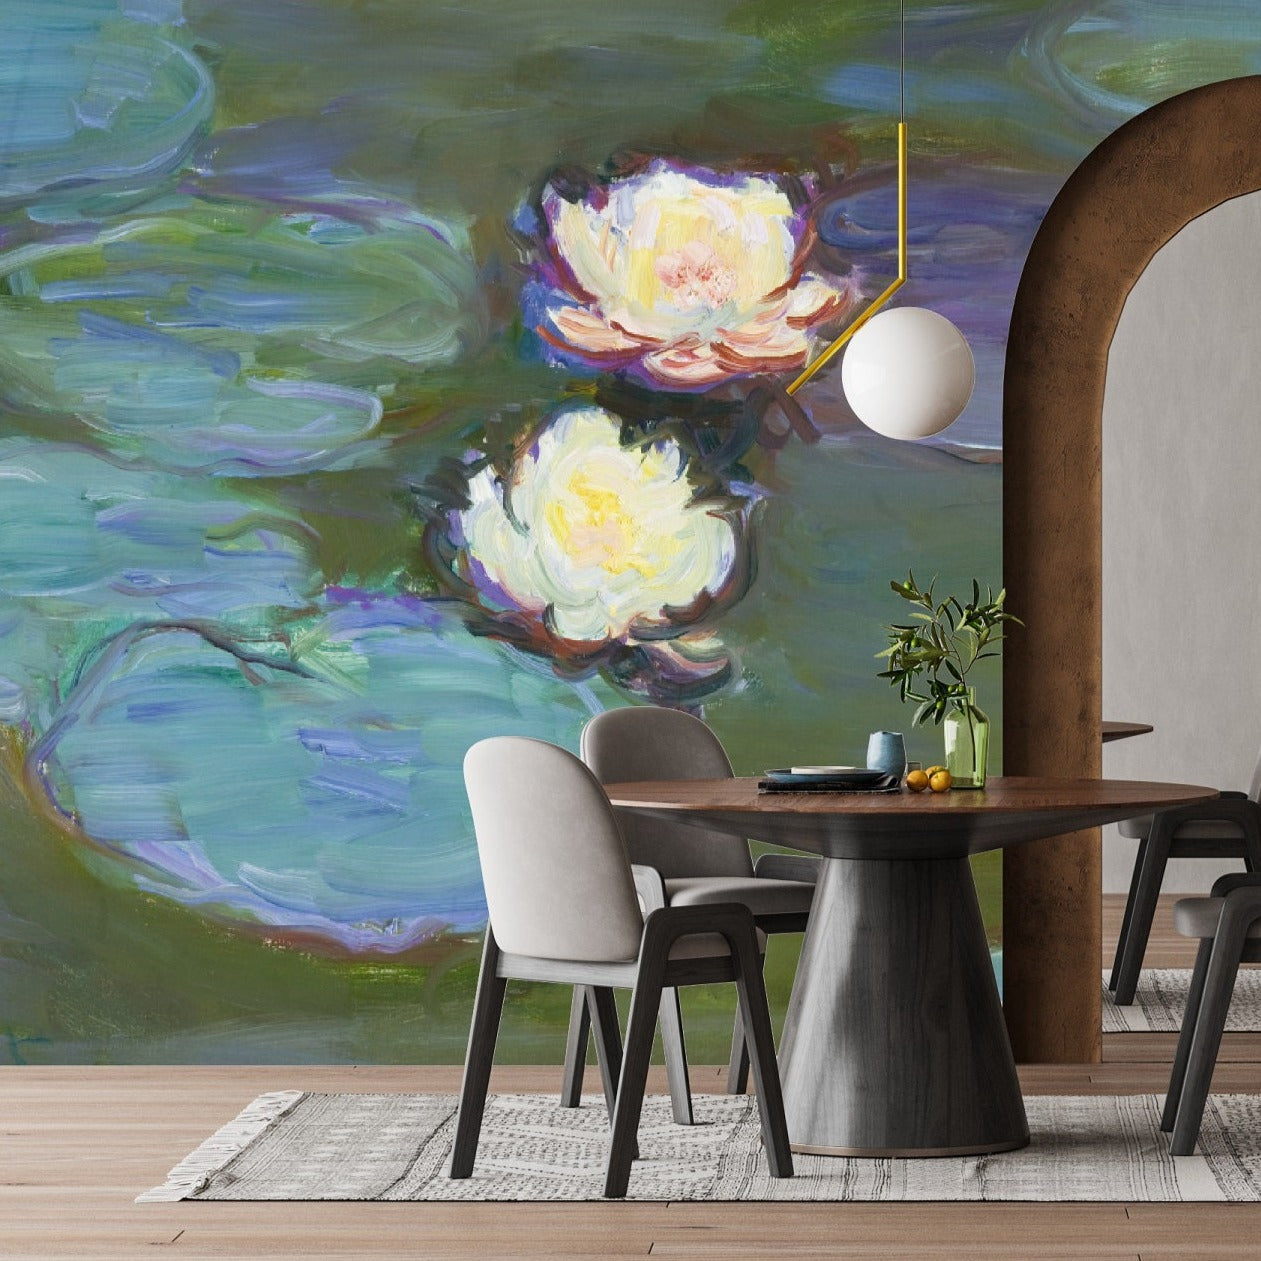 Water Flowers Art Mural Wallpaper (SqM)